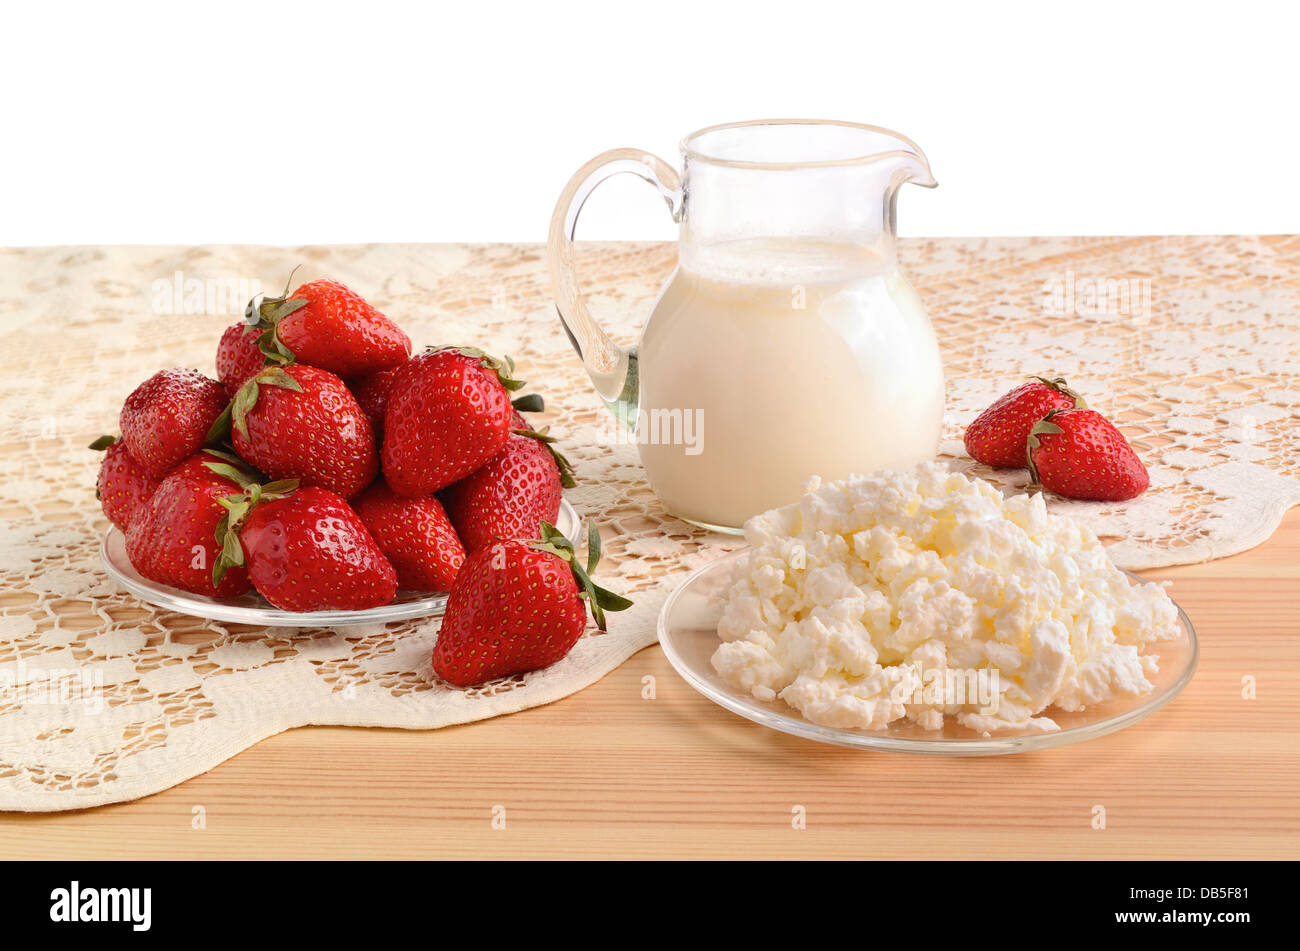 Une fraise mûre, du lait et du fromage cottage sur une nappe en bonneterie Banque D'Images